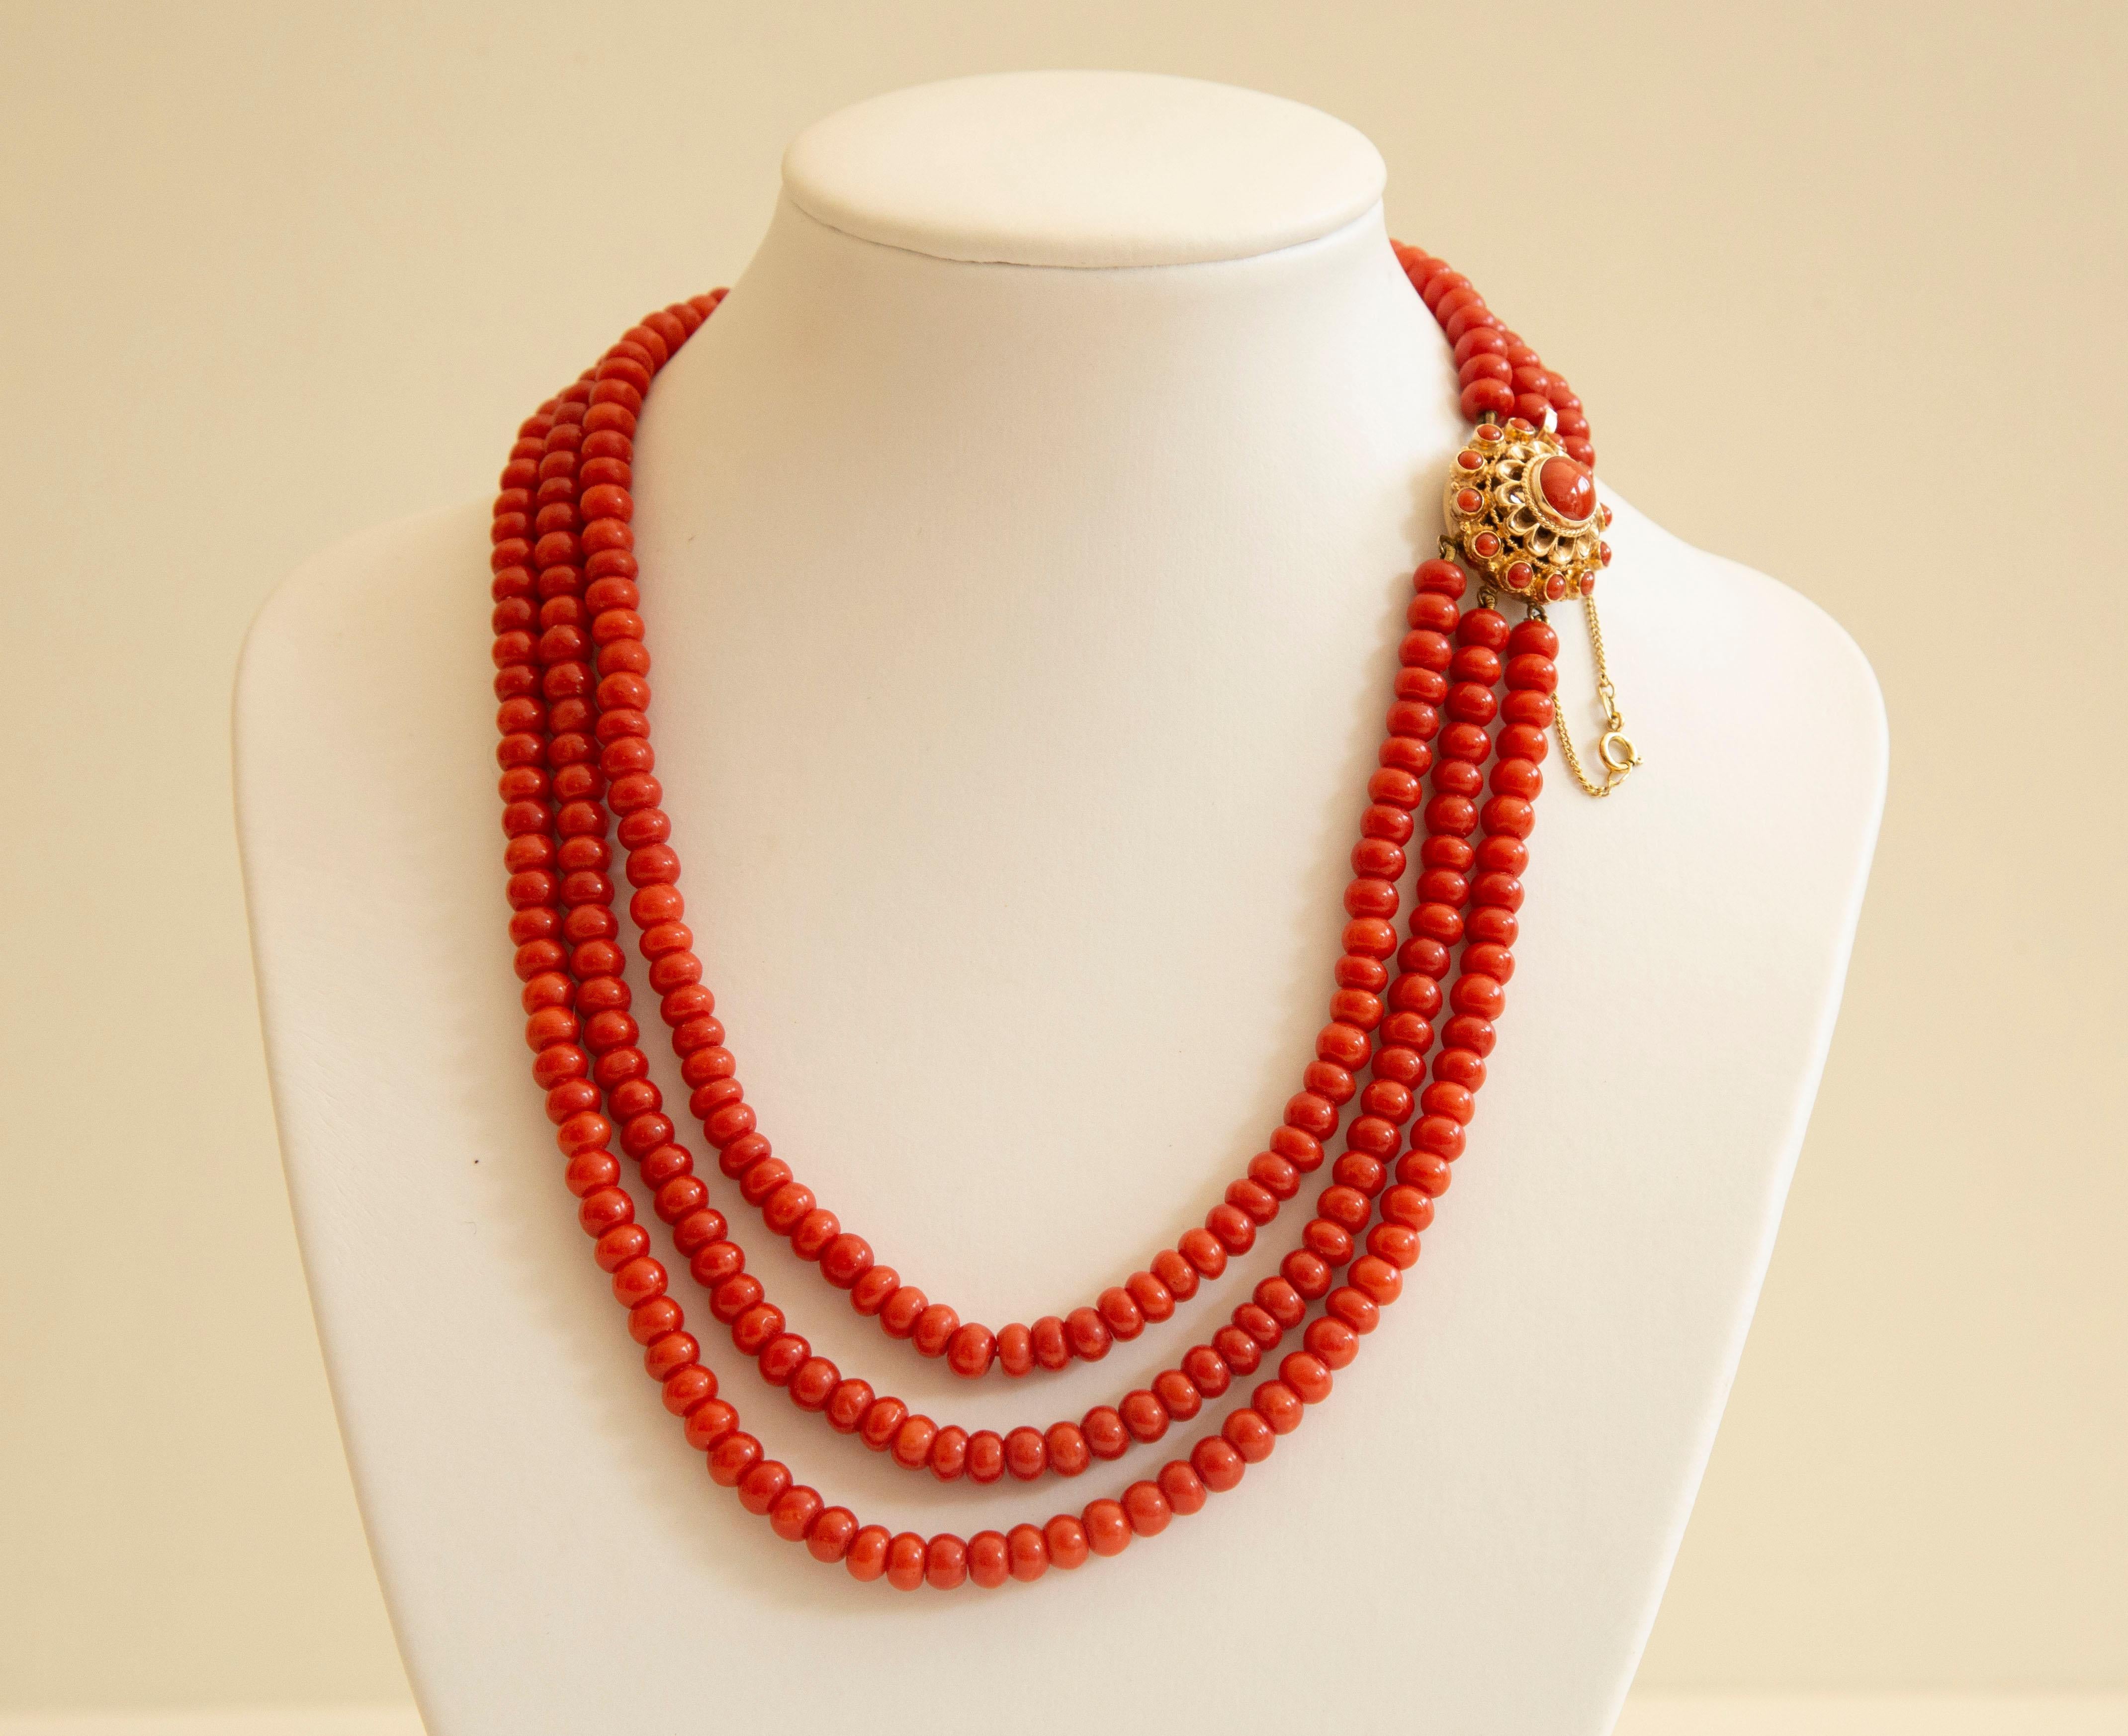 Eine antike 3-reihige rote Koralle aus der Natur  (Corallium Rubrum*) Halskette mit rundem filigranem 14-karätigem Verschluss, um 1945, Niederlande. Die Perlen haben eine runde und regelmäßige Form. Die Größe der Perlen ist CA. 5 mm im Durchmesser.